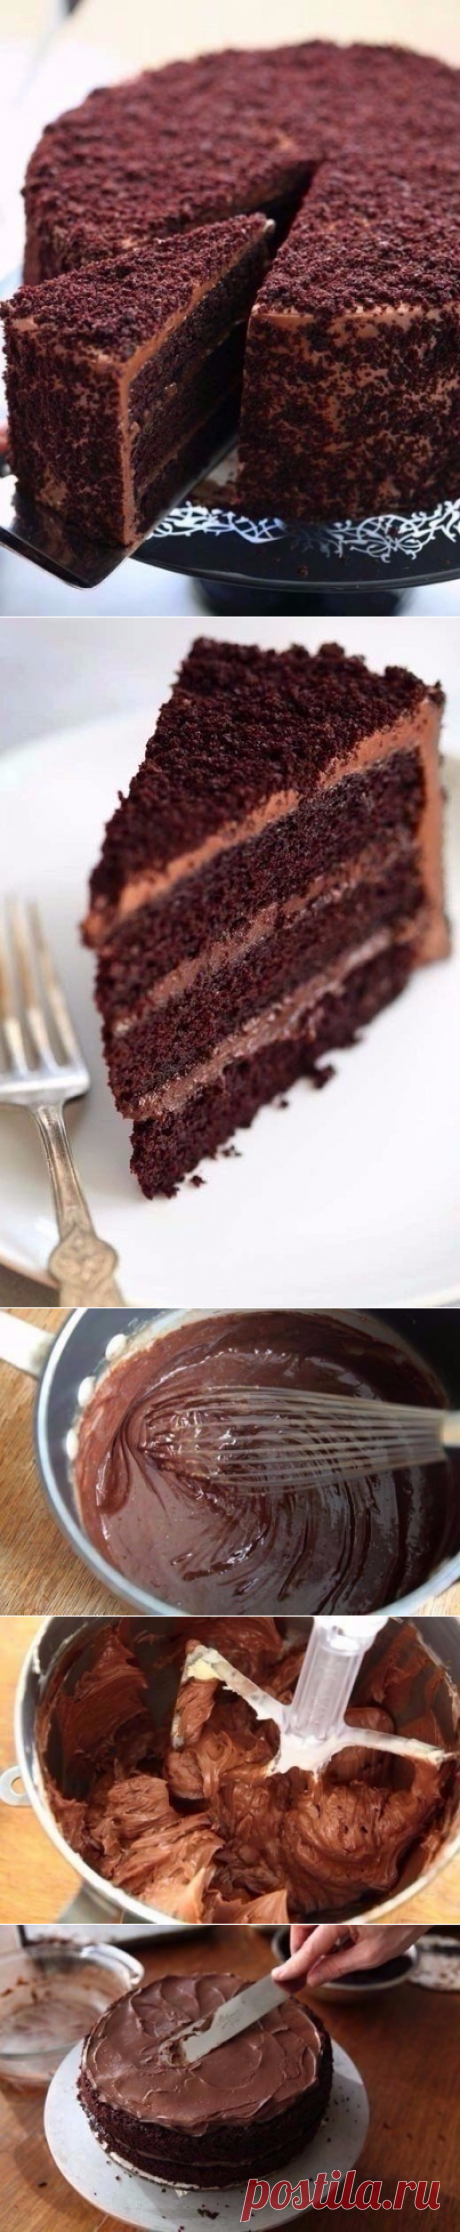 Как приготовить шоколадный торт пеле. - рецепт, ингридиенты и фотографии